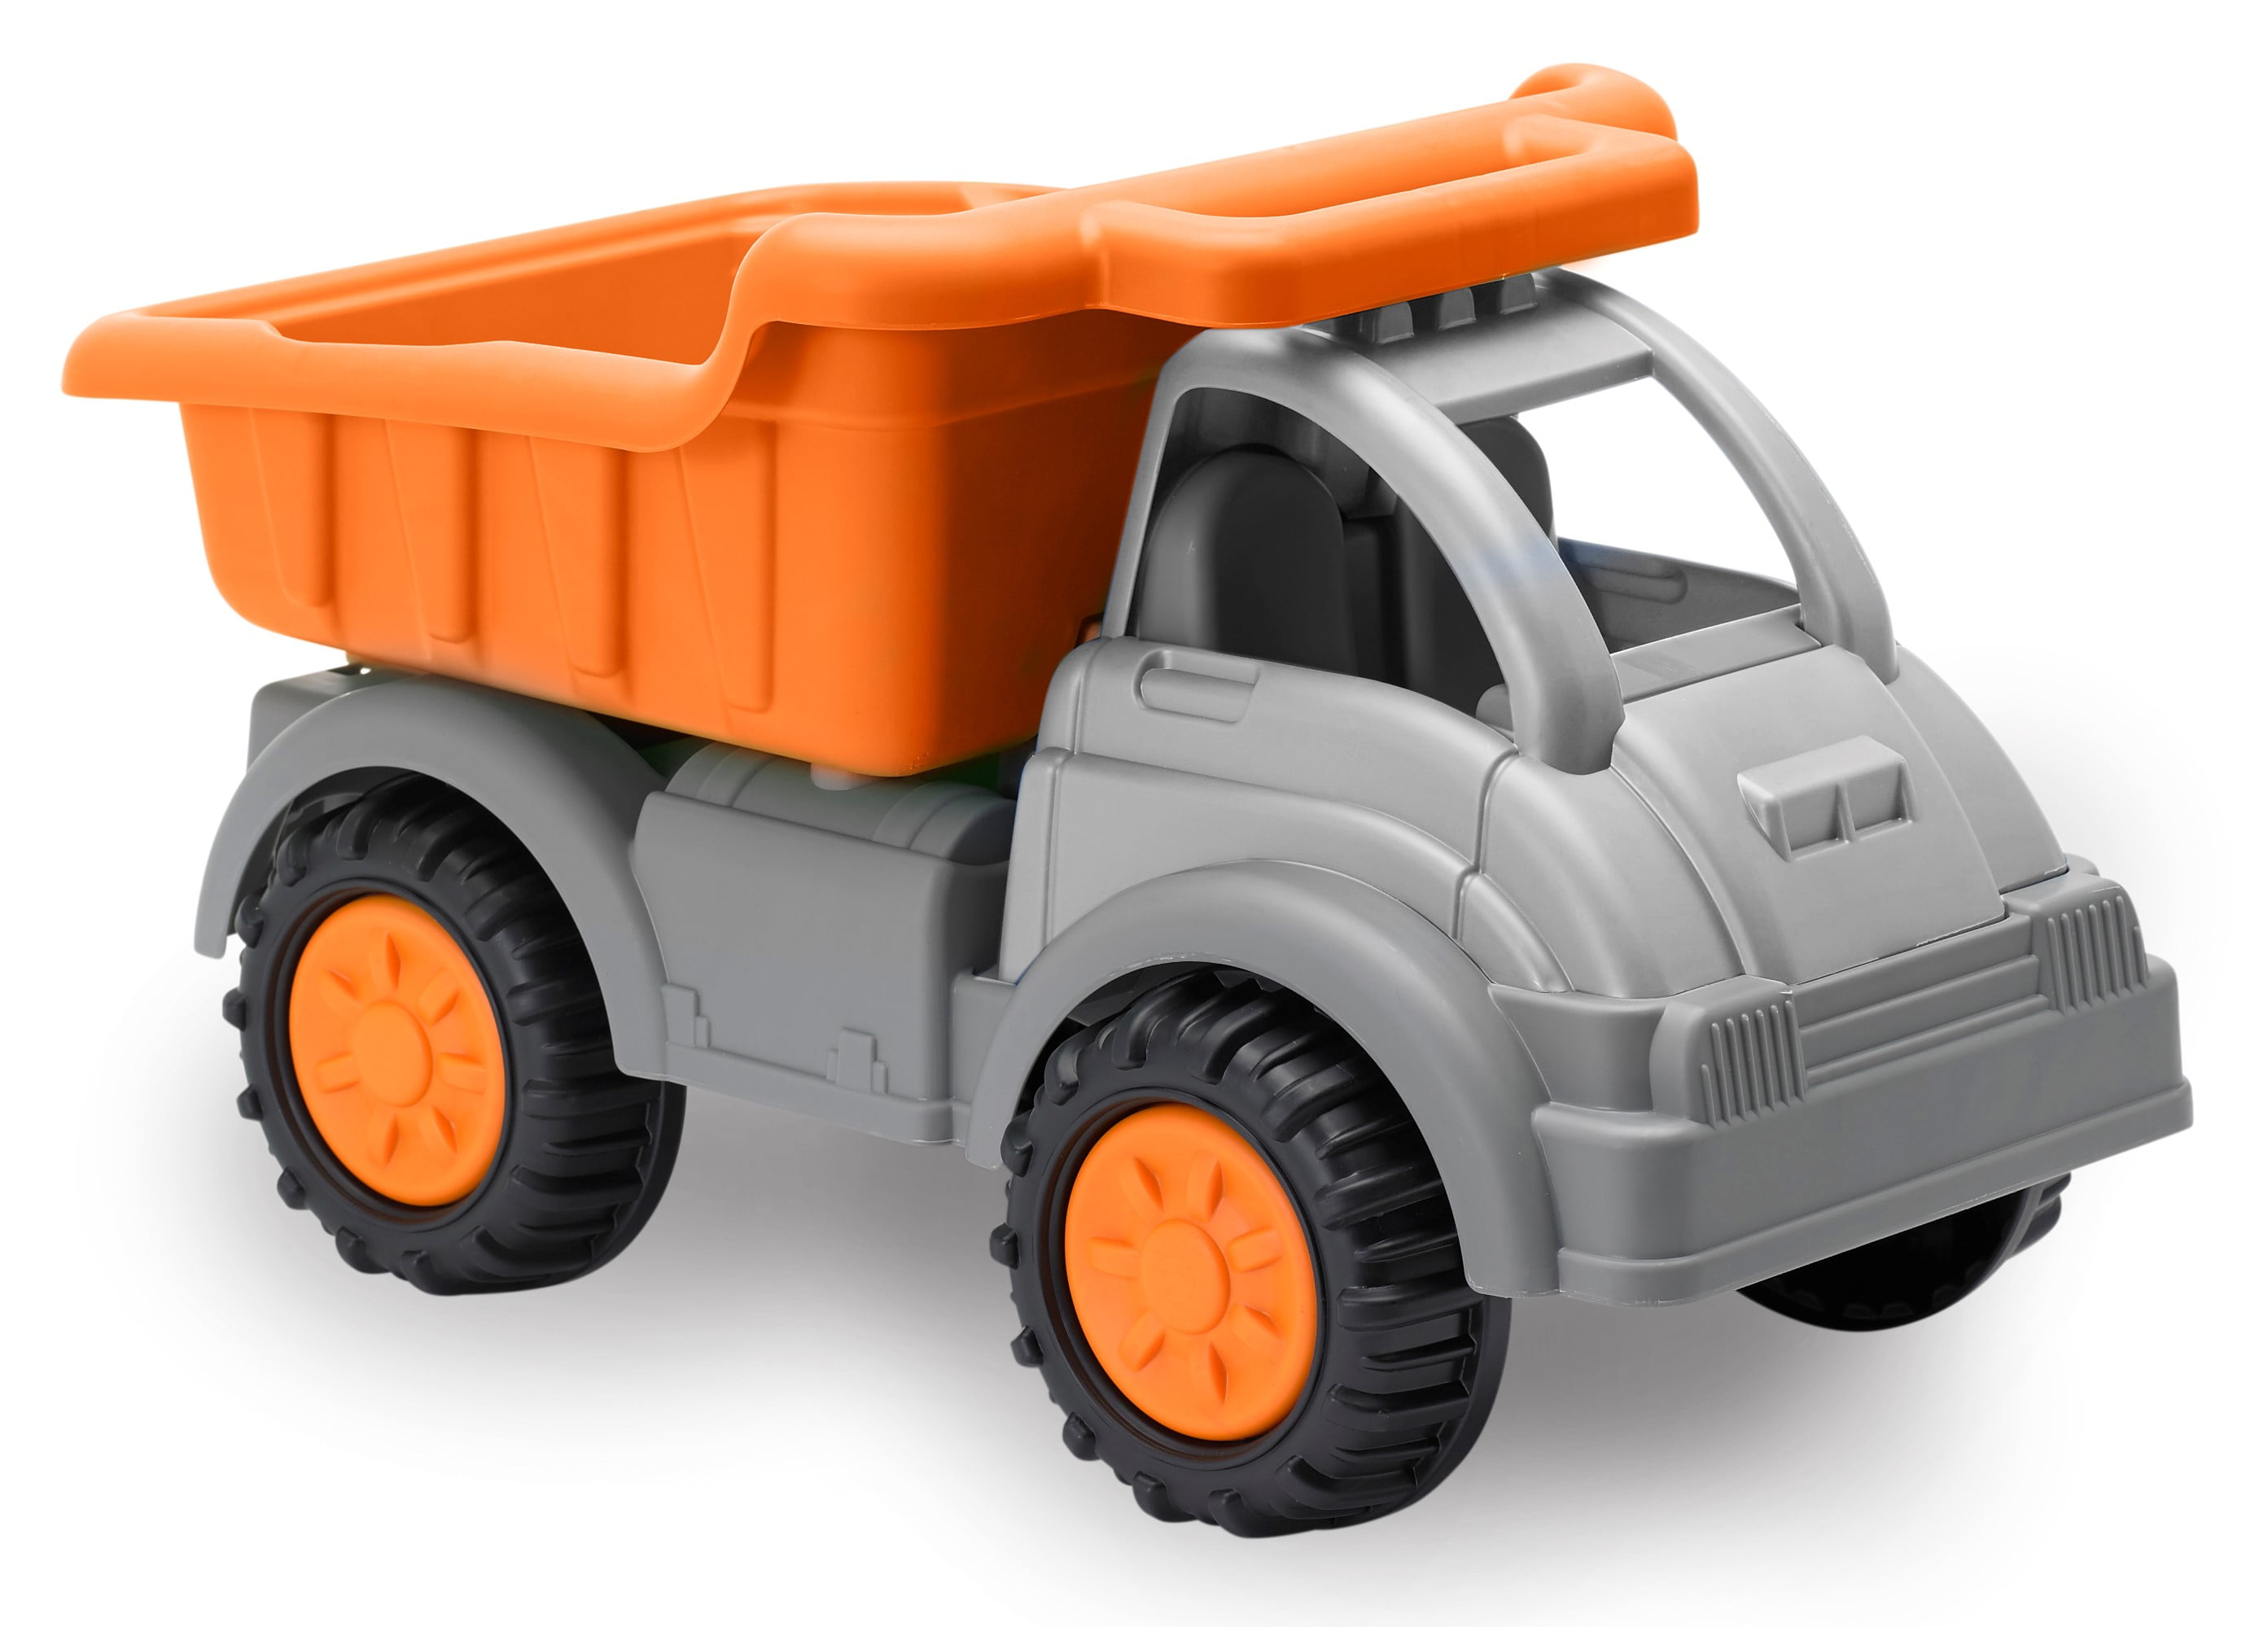 gigantic dump truck toy